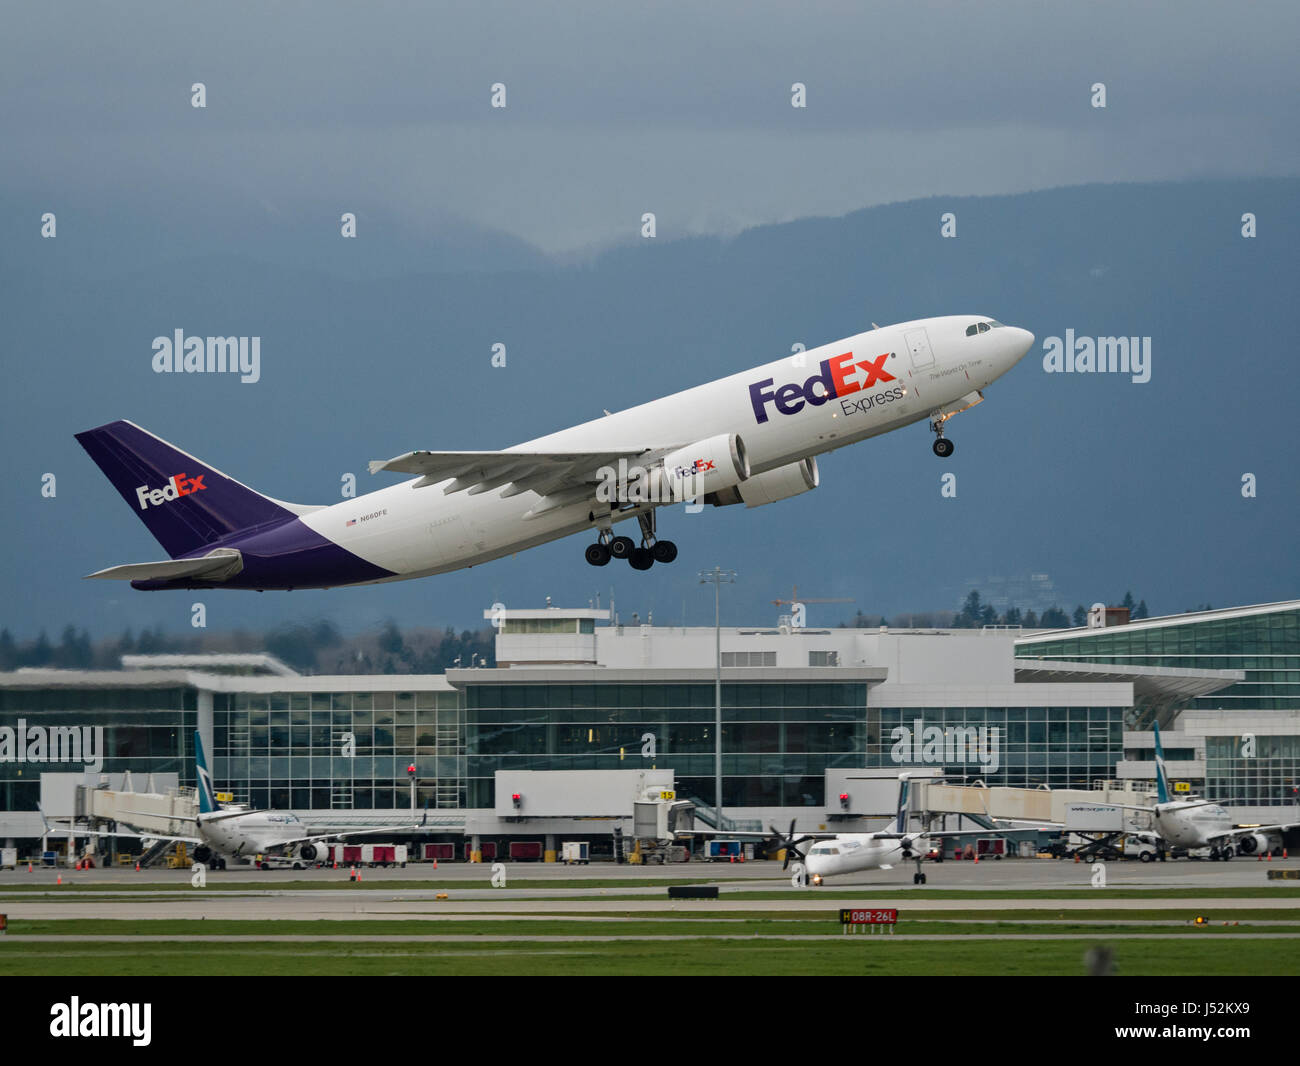 FedEx Express avión de aerolínea de carga del avión Airbus A300-600 de avión tome despegar del aeropuerto internacional de Vancouver airborne Foto de stock